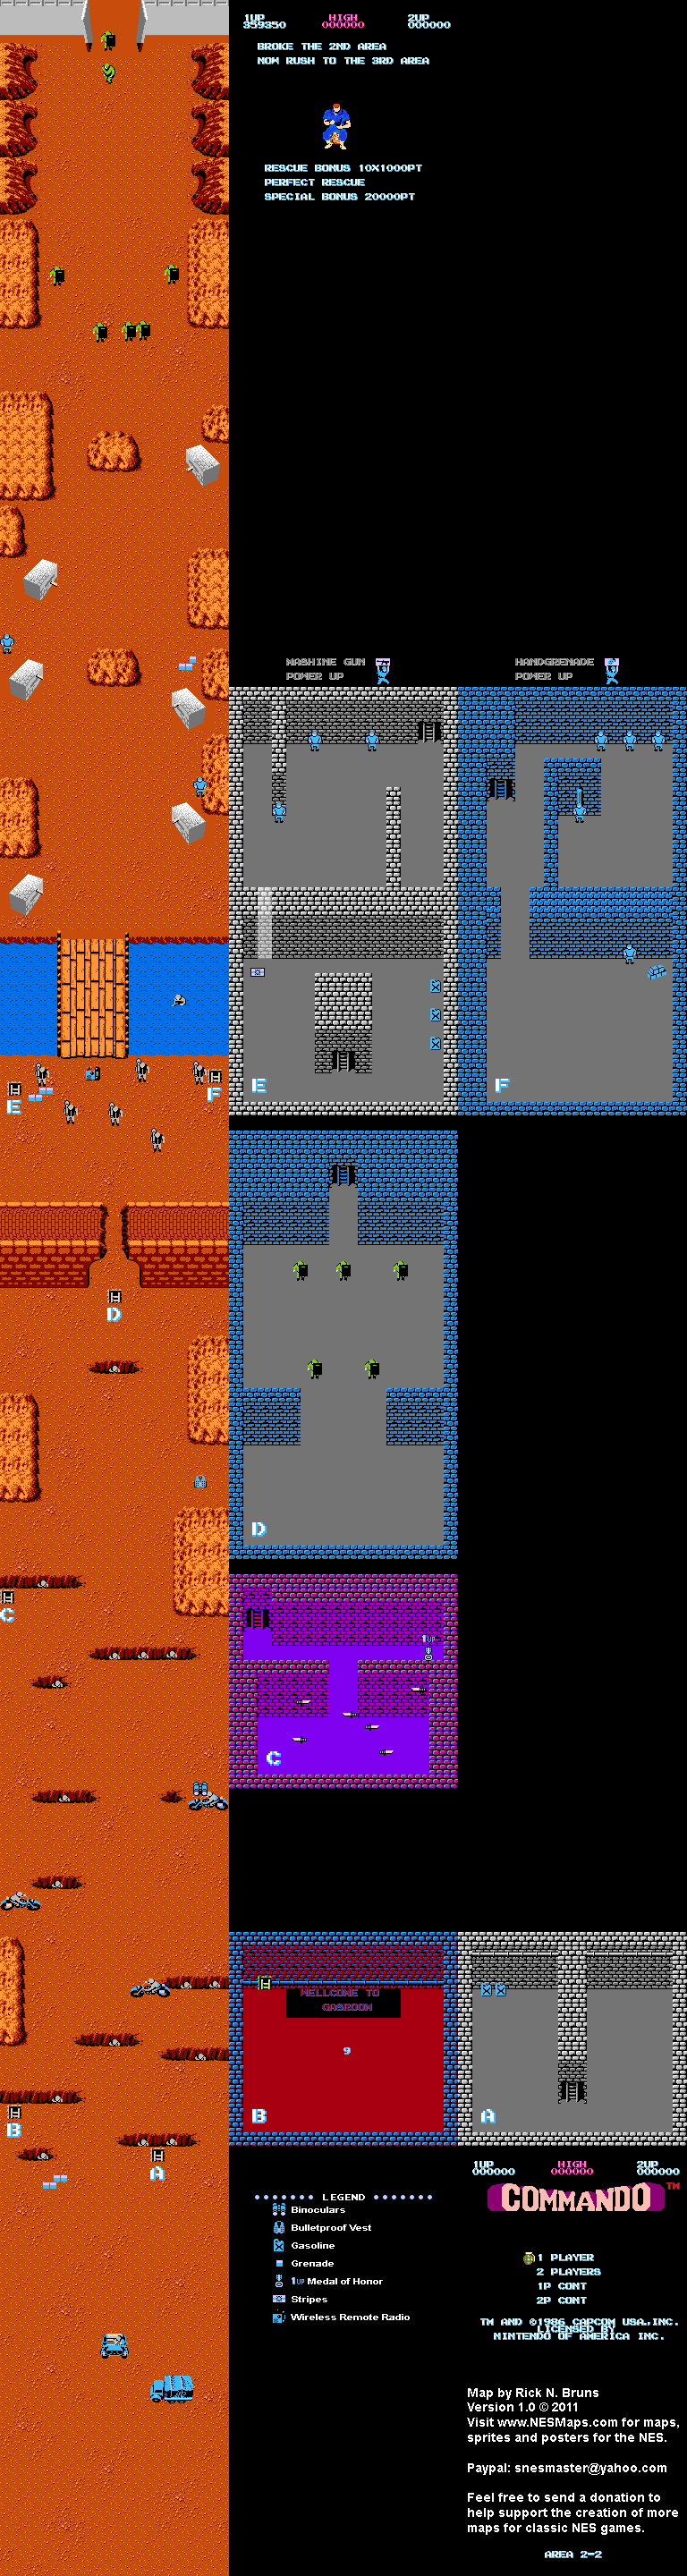 Commando - Area 2-2 - Nintendo NES Map